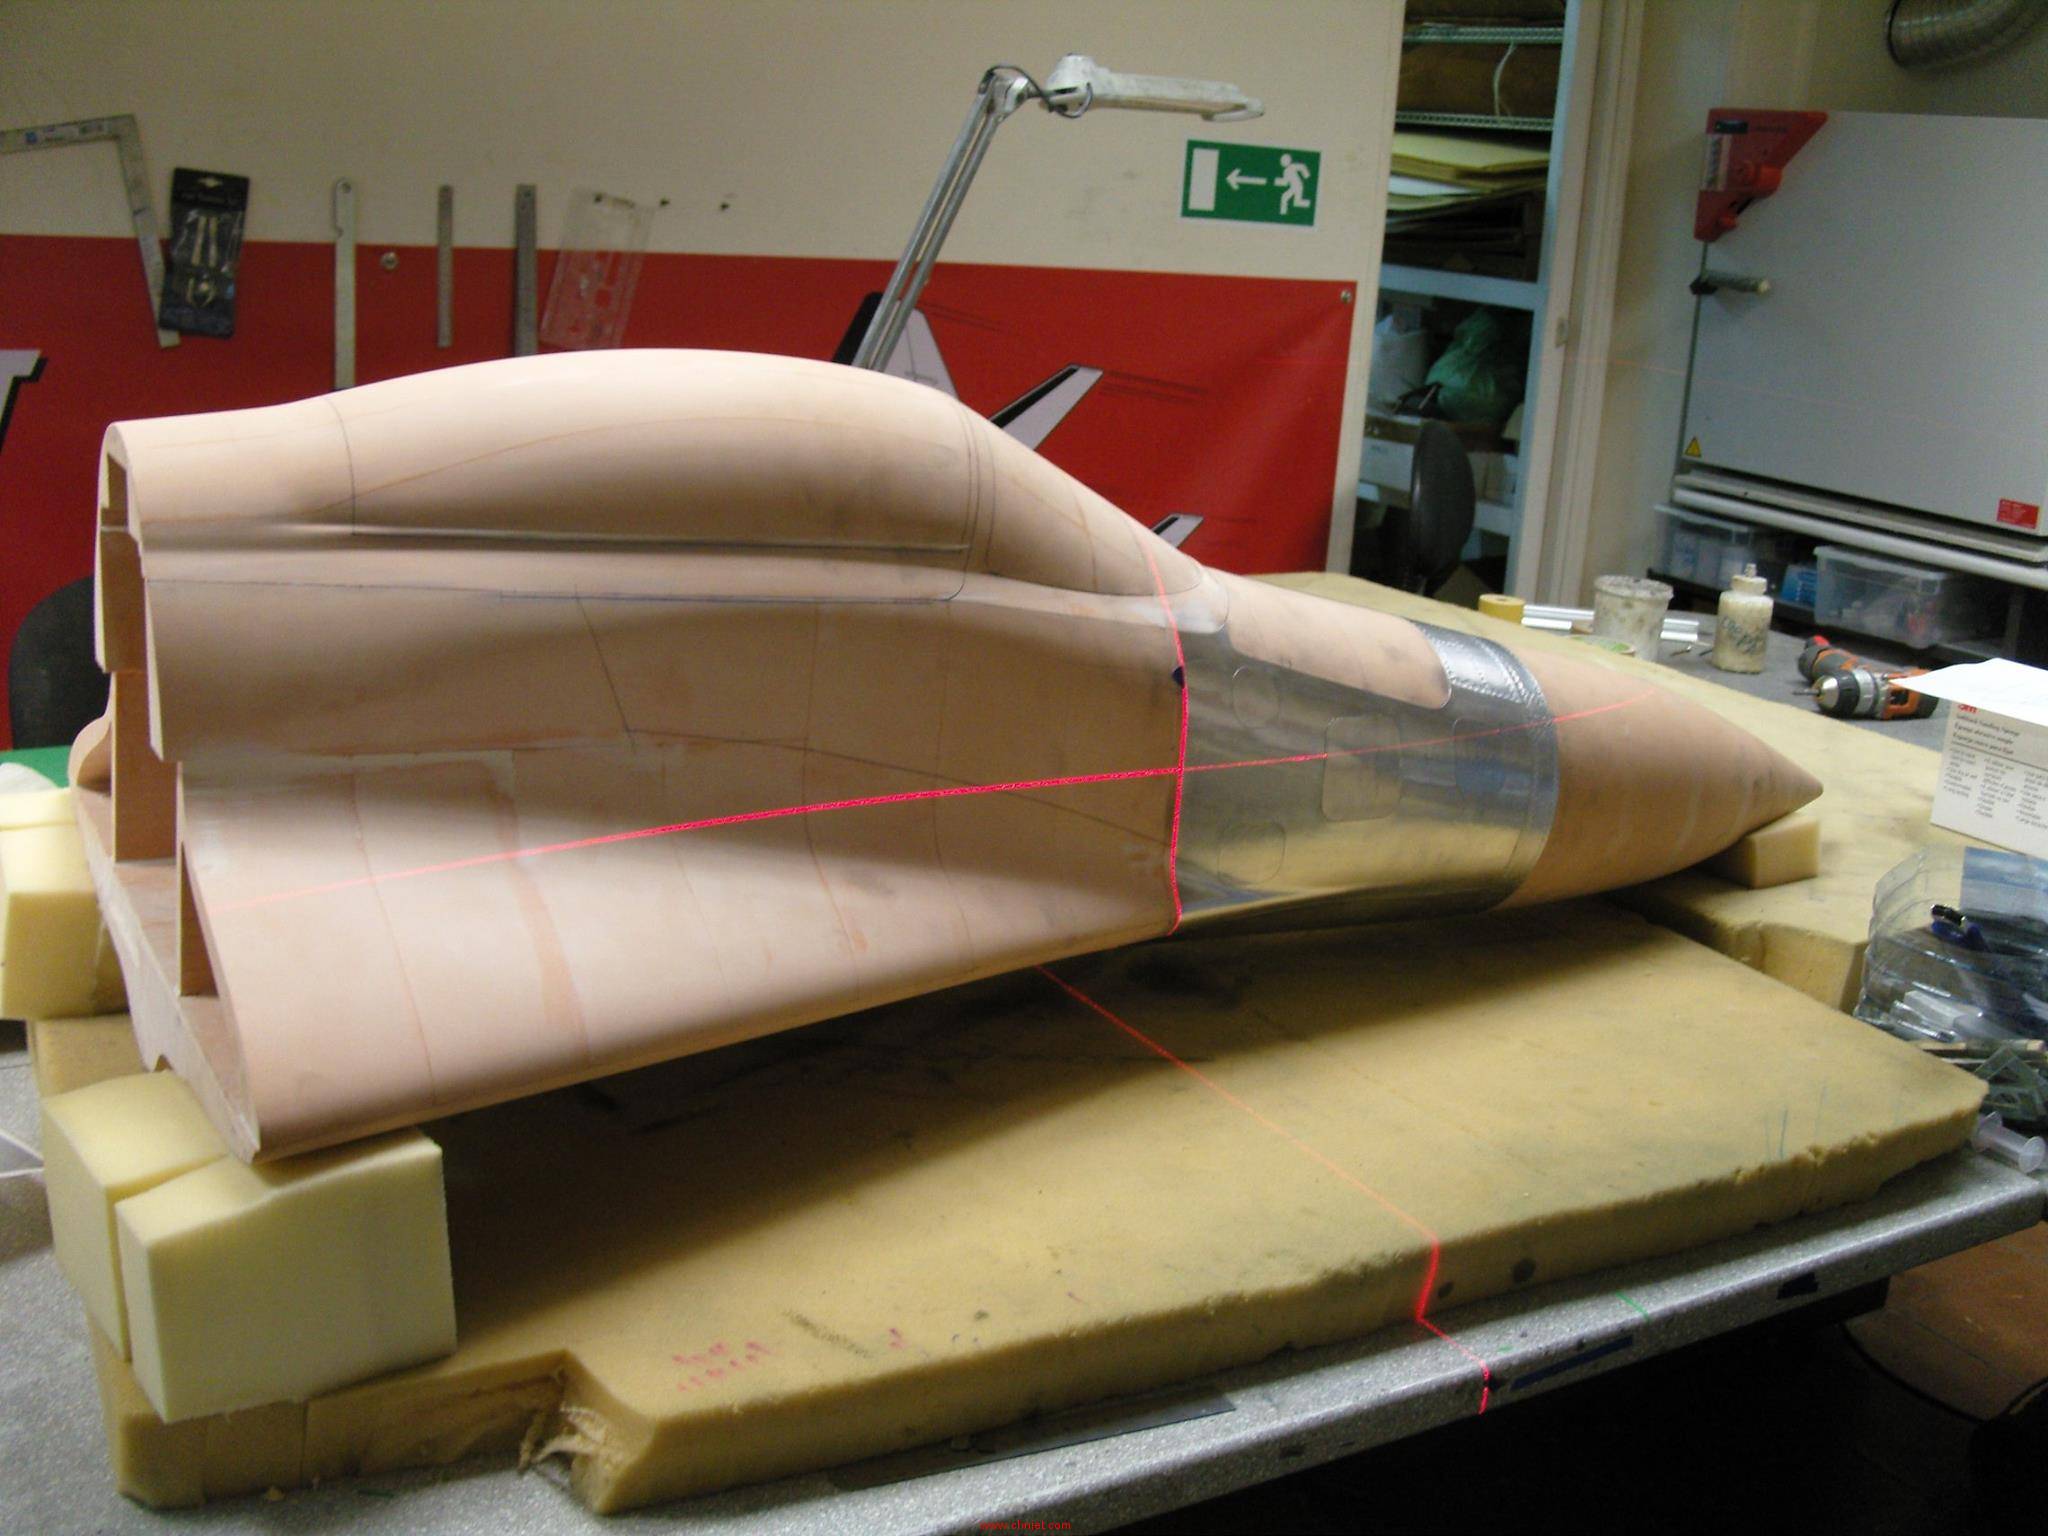 Rusjet的MiG-29飞机制作细节